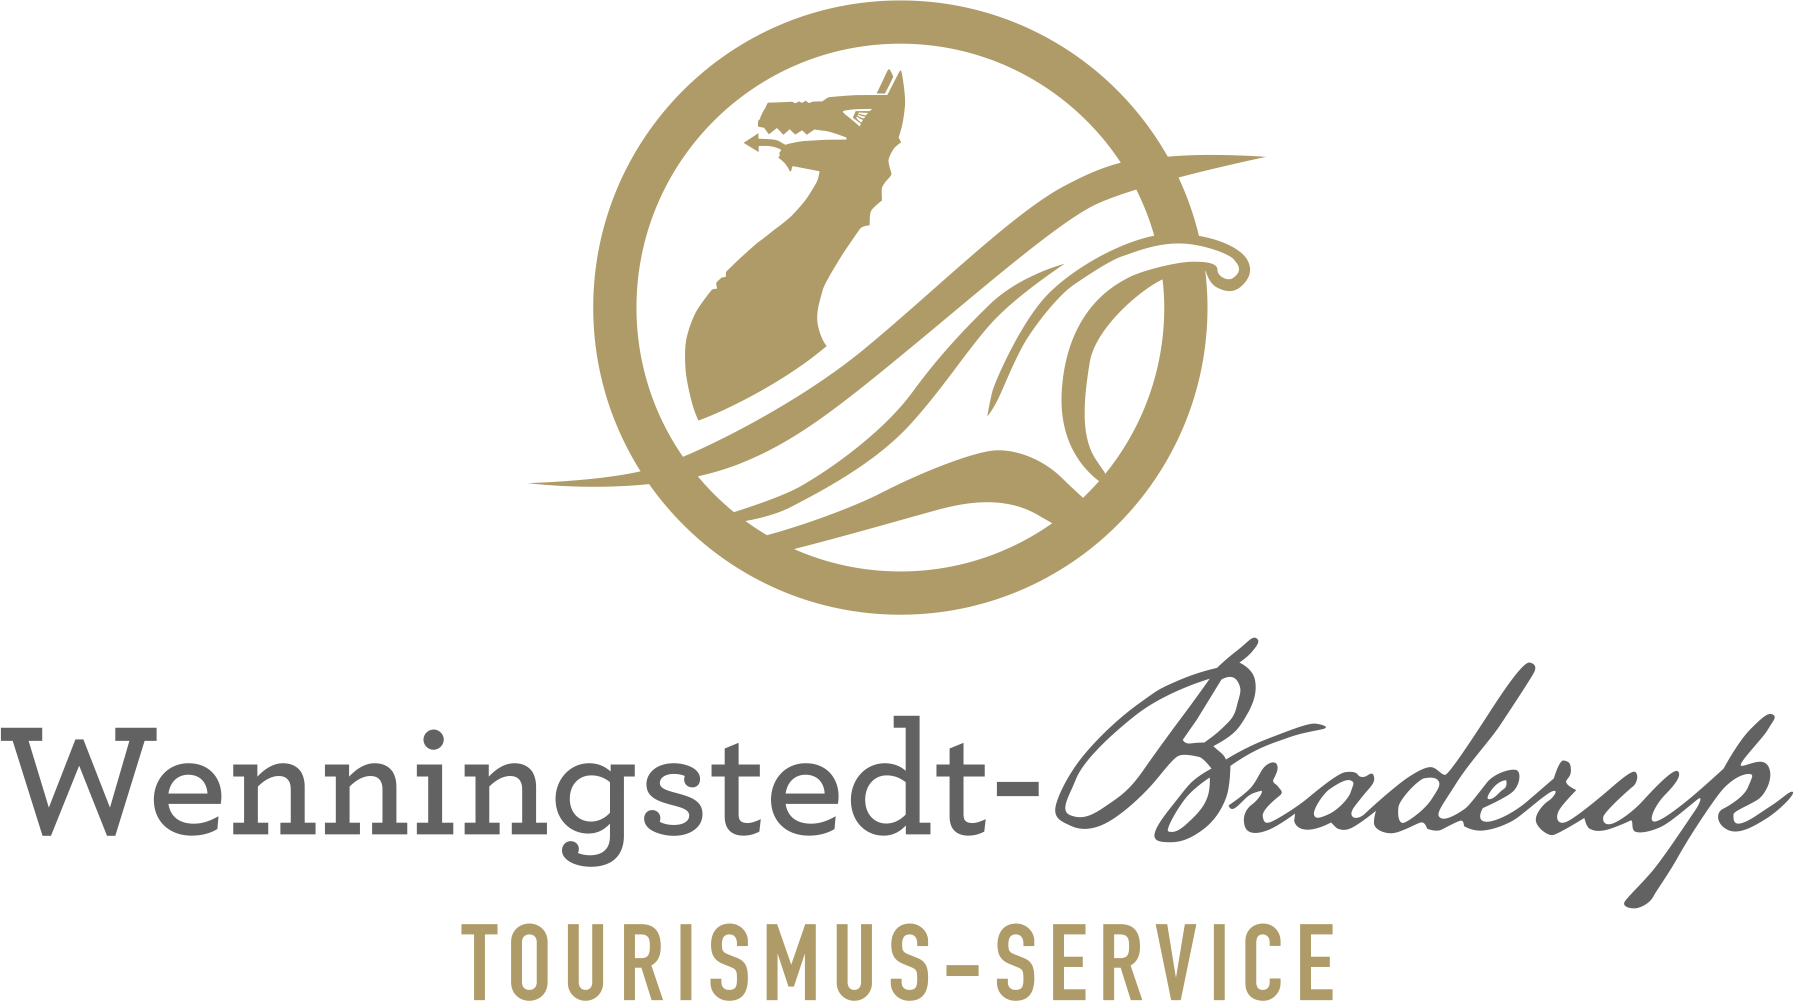 Das Logo für Weiningst Bradup Tourism Service.